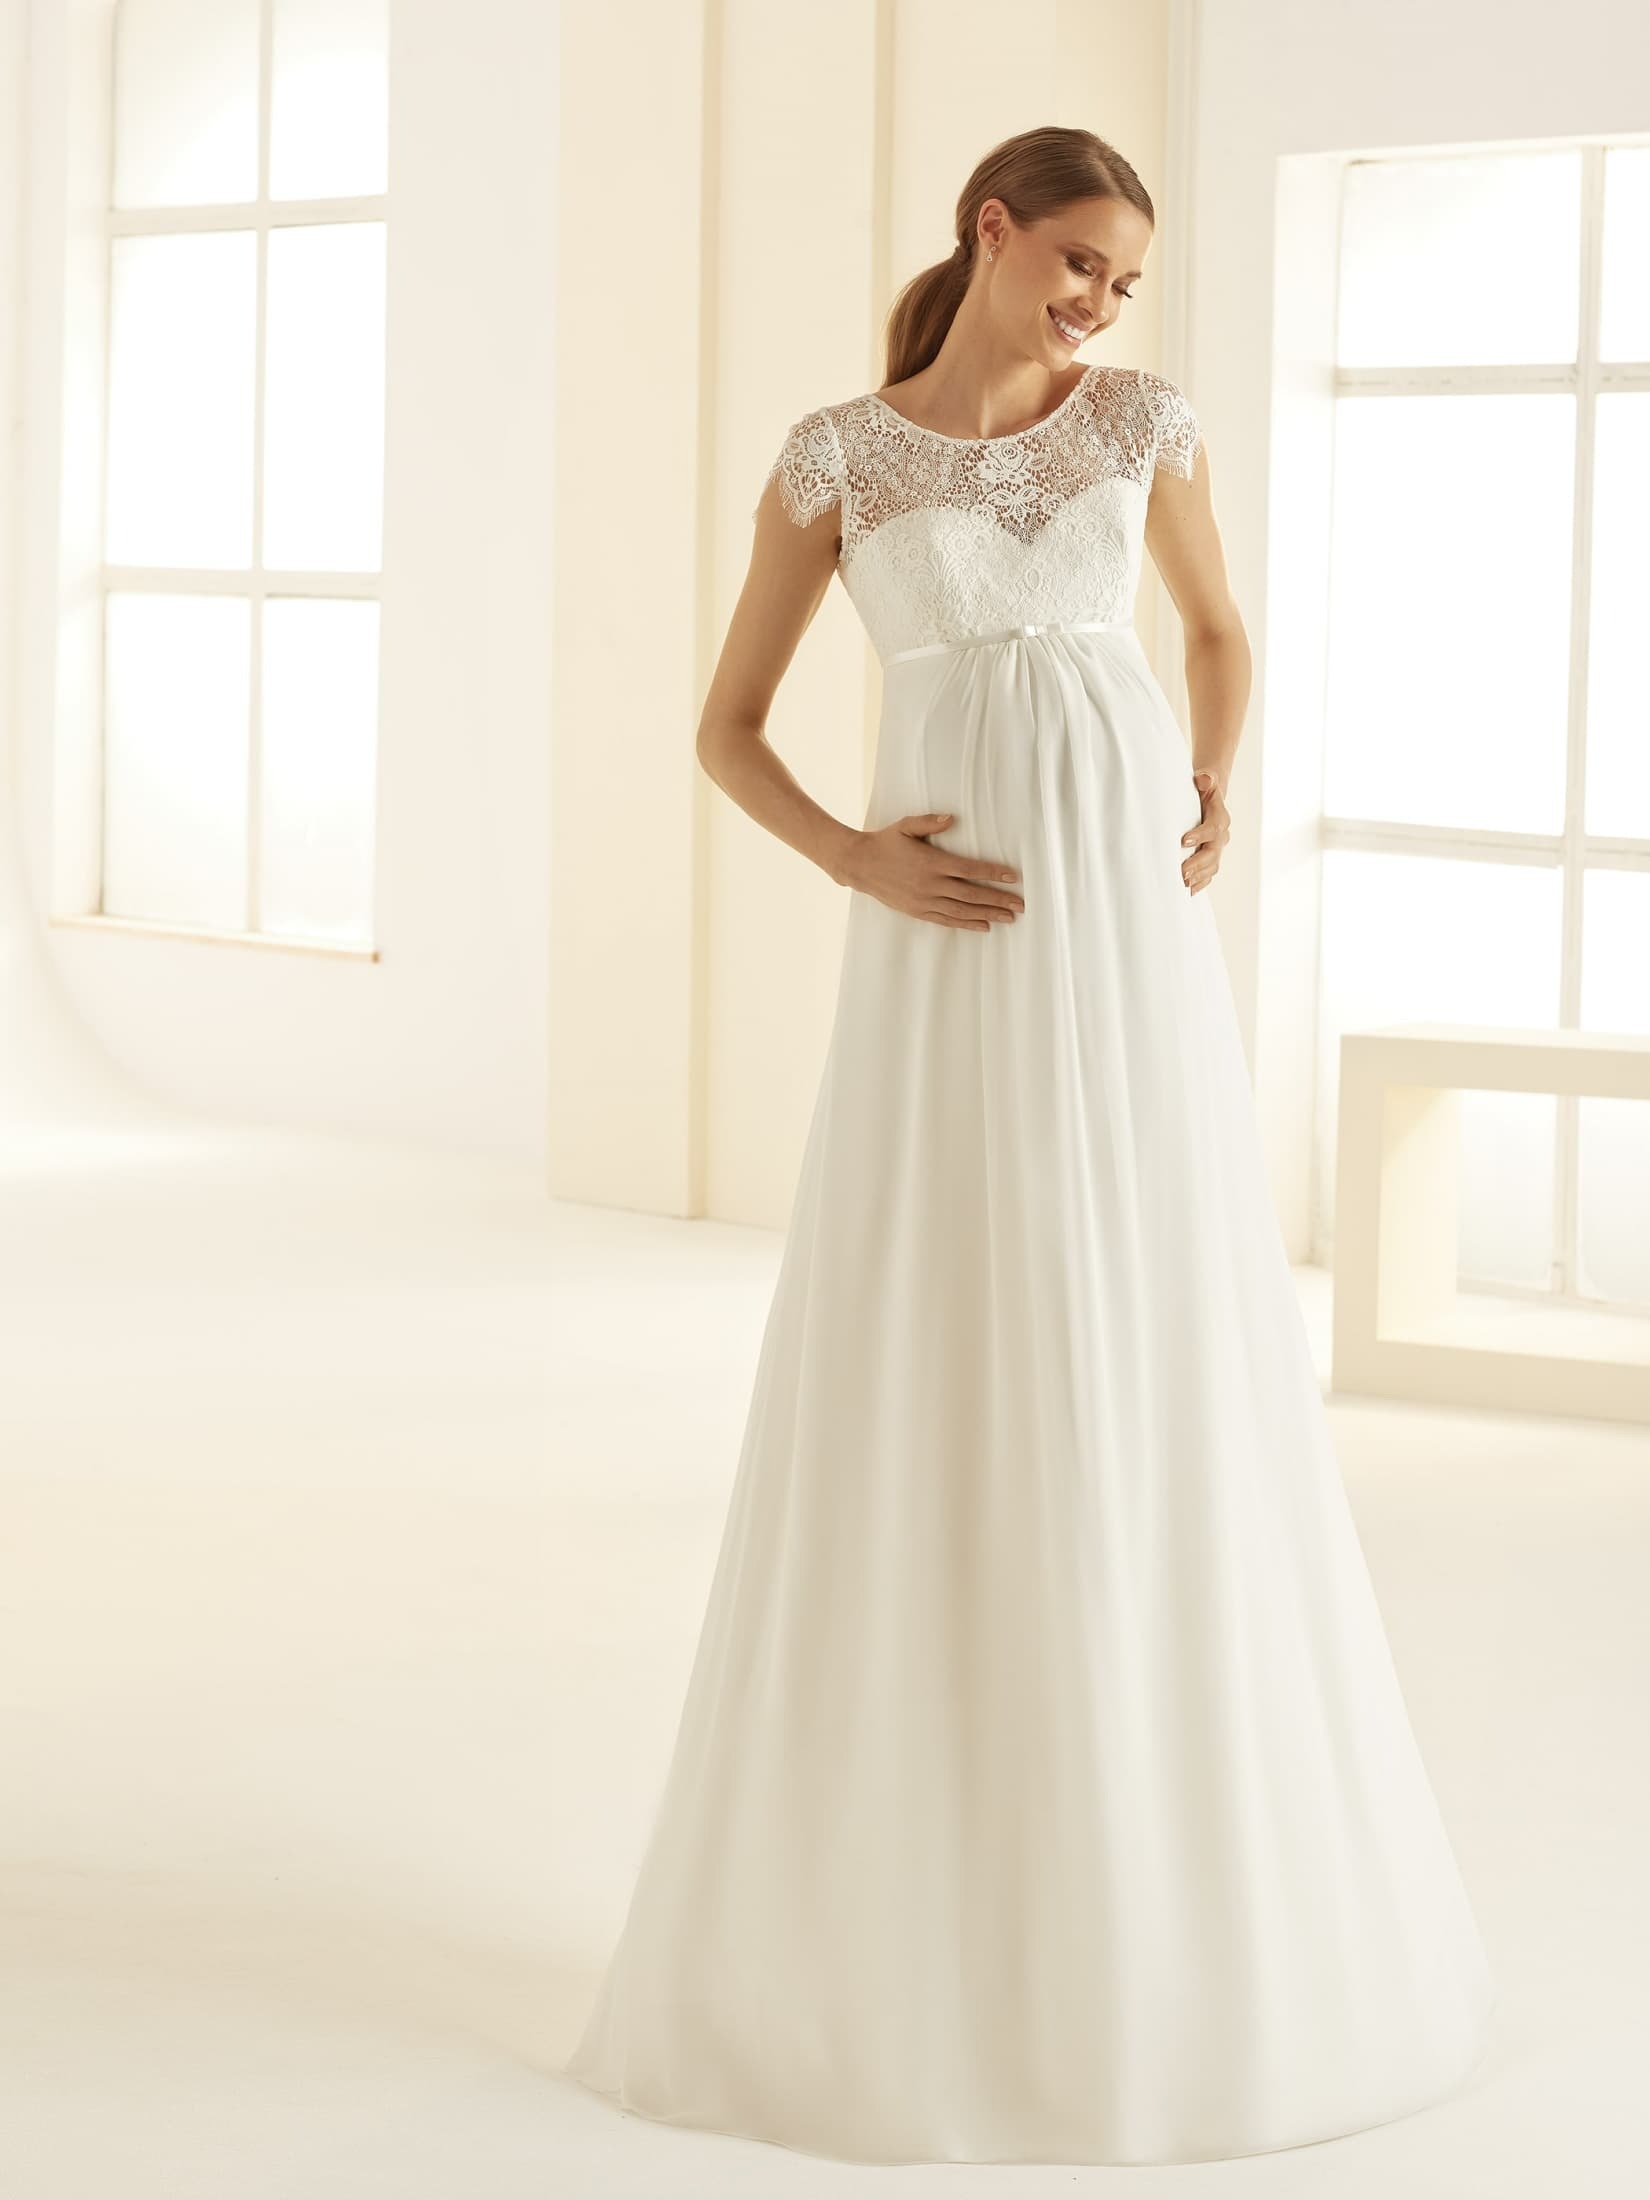 Obrázek ženy se svatebními šaty Bernadette od značky Bianco Evento